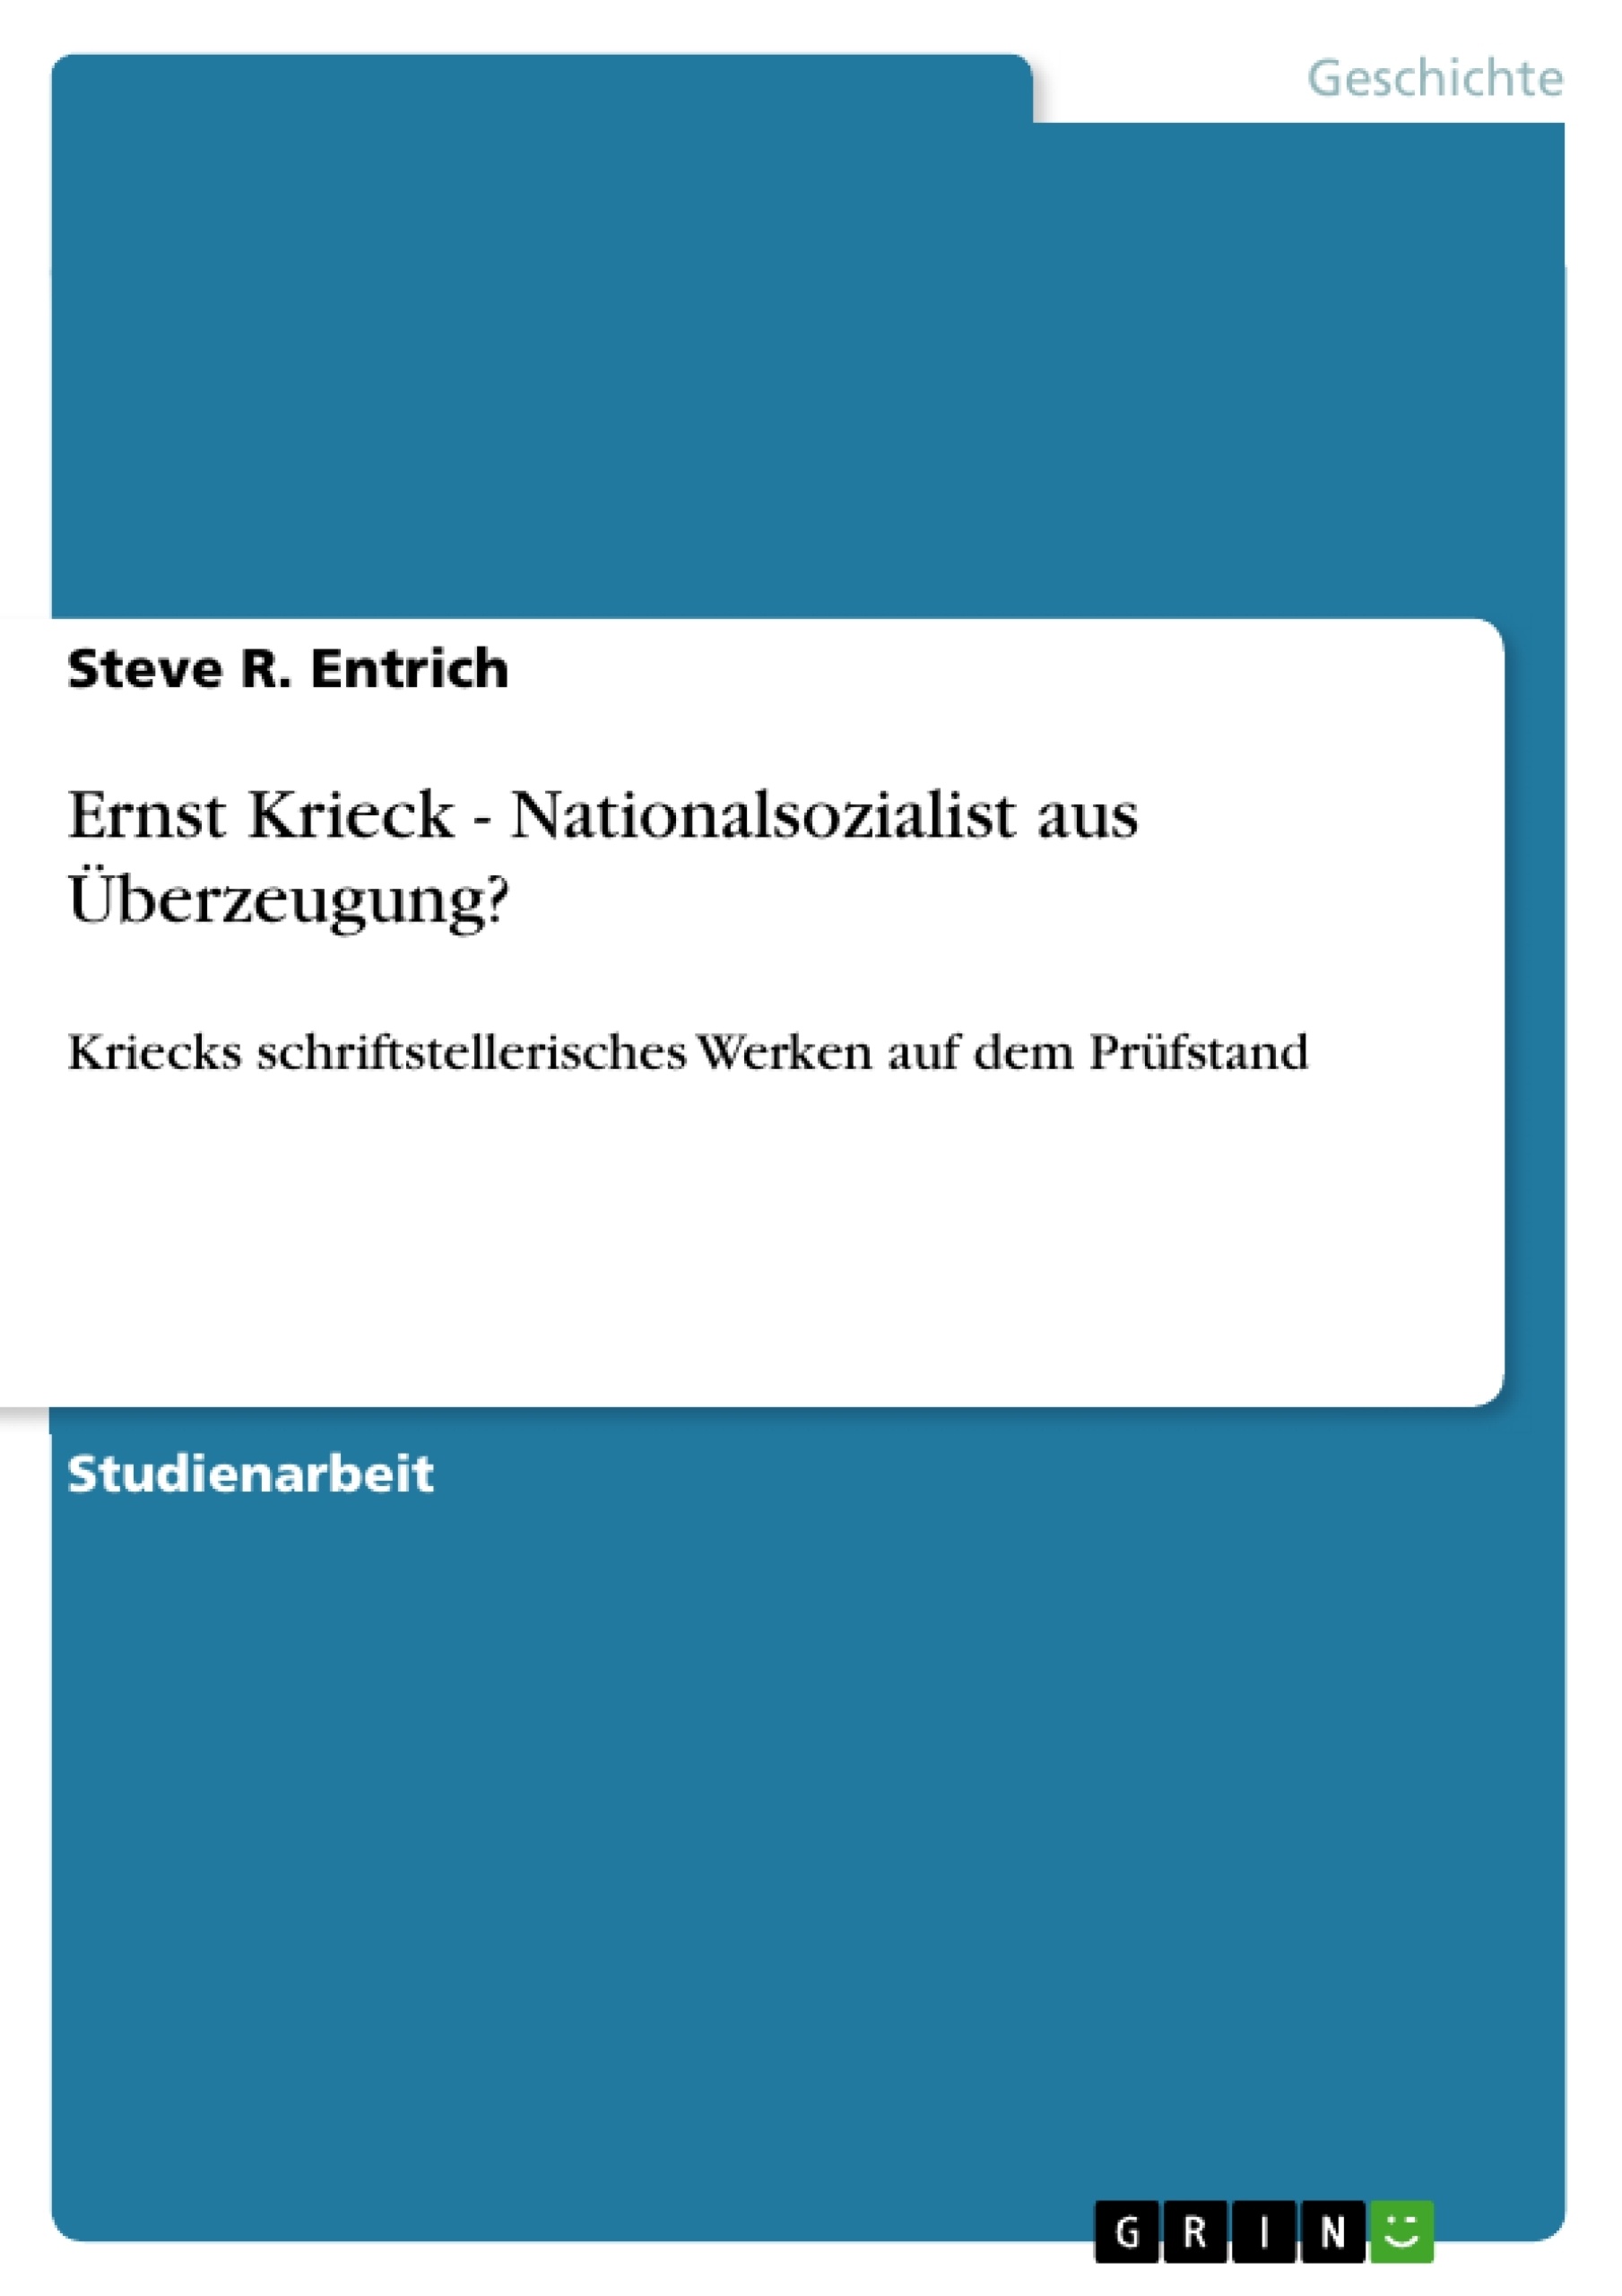 Title: Ernst Krieck  - Nationalsozialist aus Überzeugung?